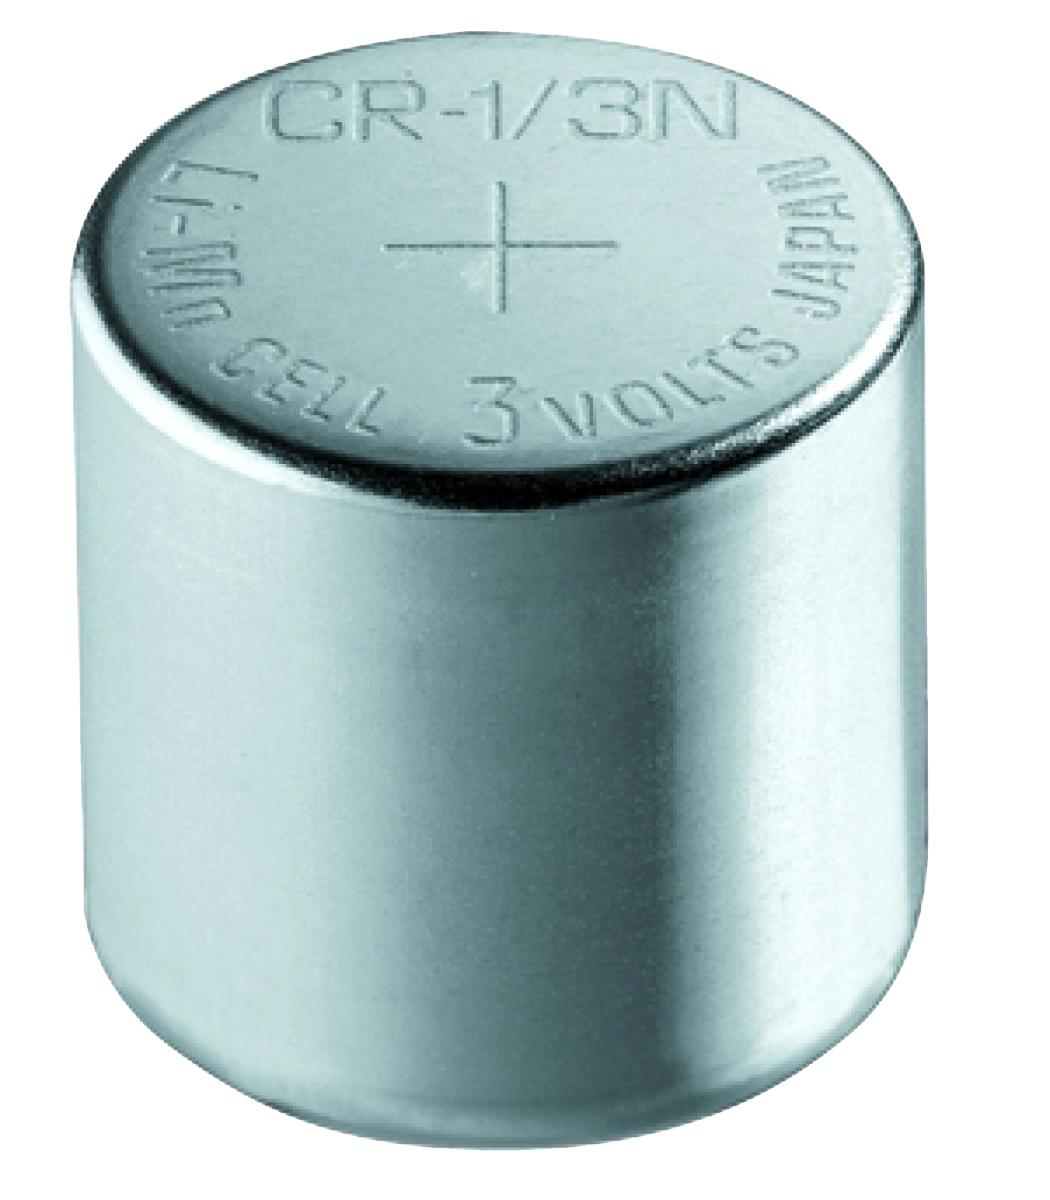 Pile bouton lithium 3.0v-170 mah (10.6 x 10.8mm) cr11108 / 2l76 / varta 6131.101.401